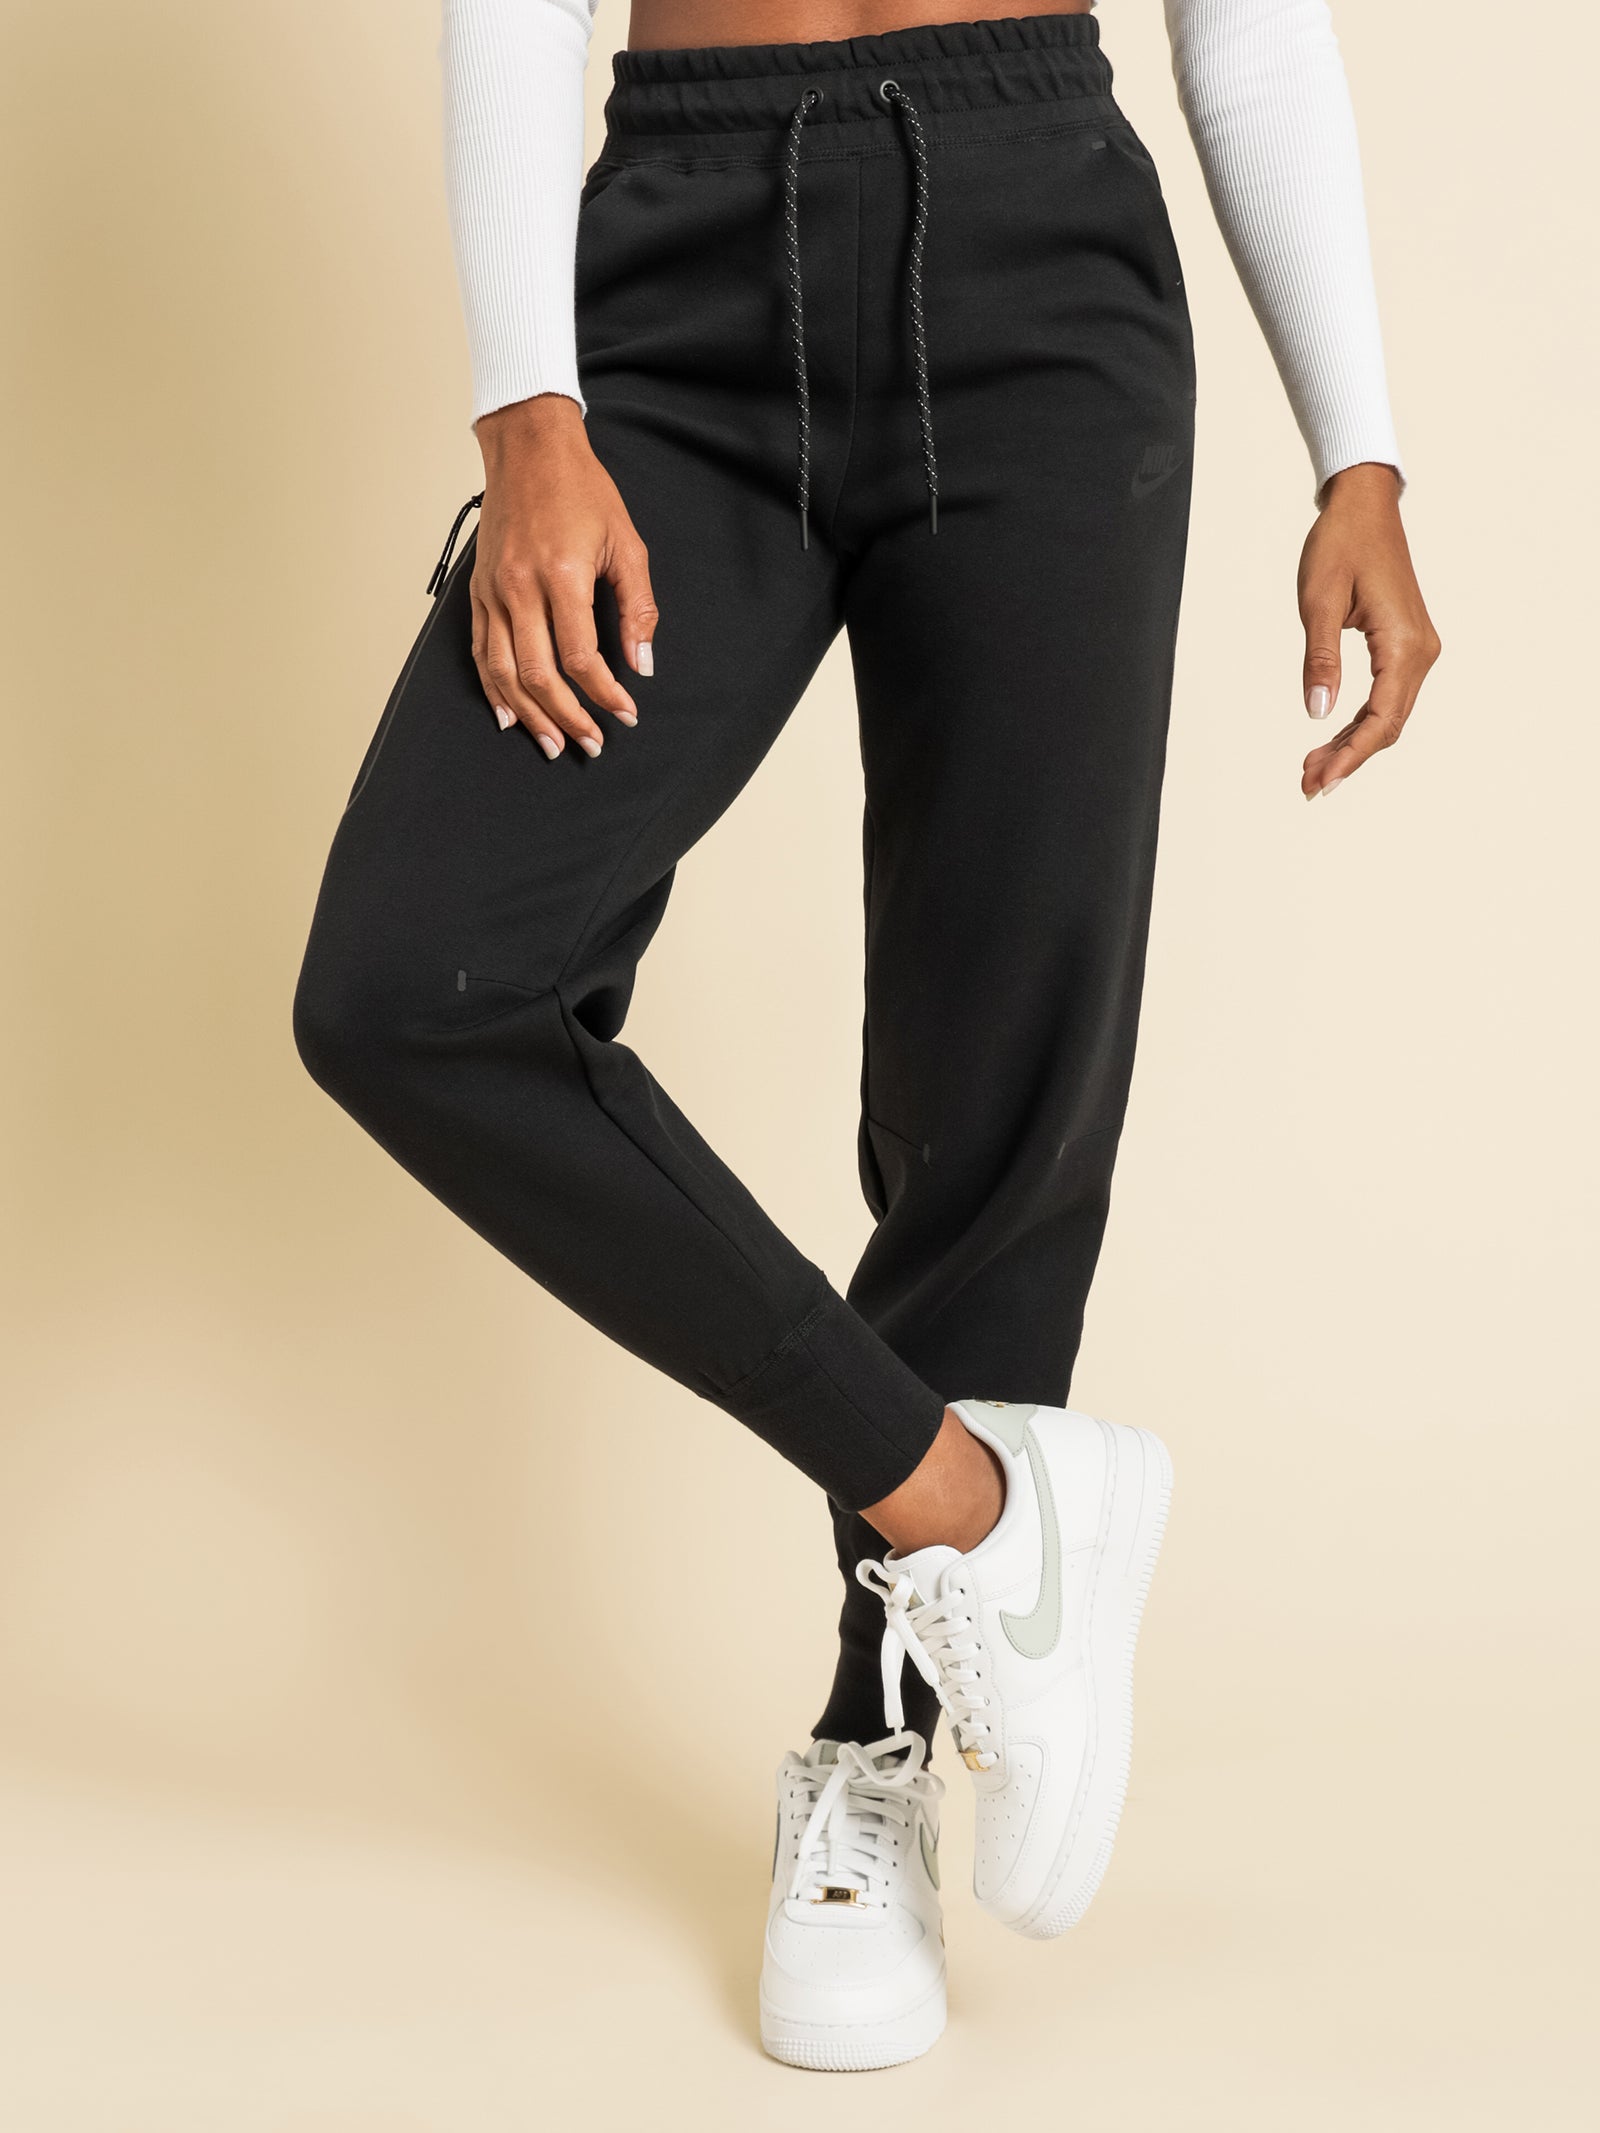 Nike Sportswear Tech Fleece Women's Pants Black CW4292-010